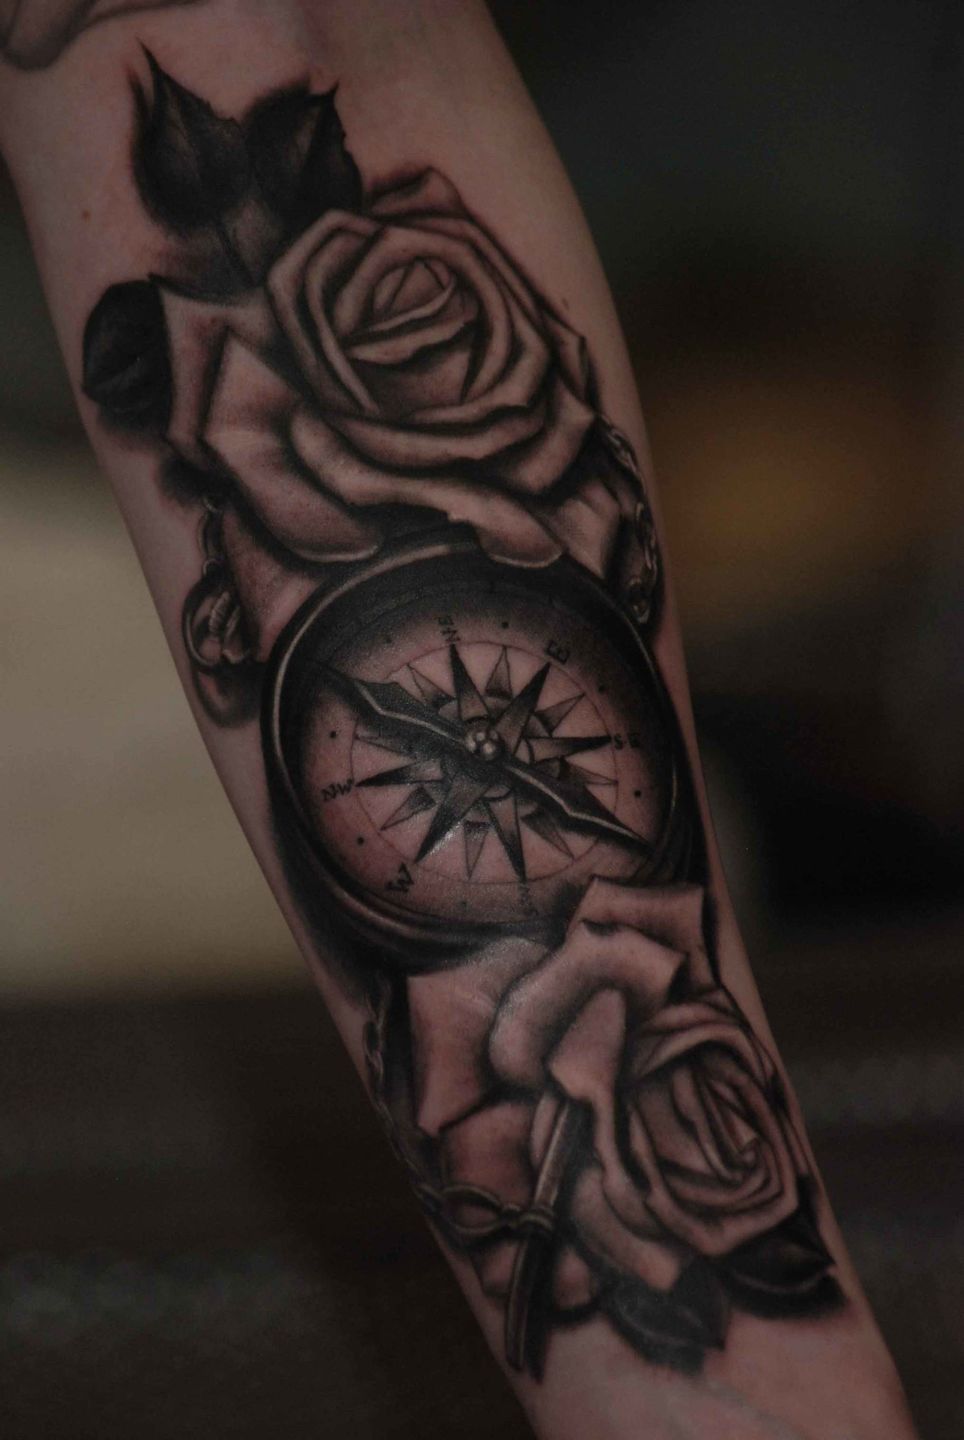 Compass-roses-forearm-rosemary-mckevitt-tattoo-ireland